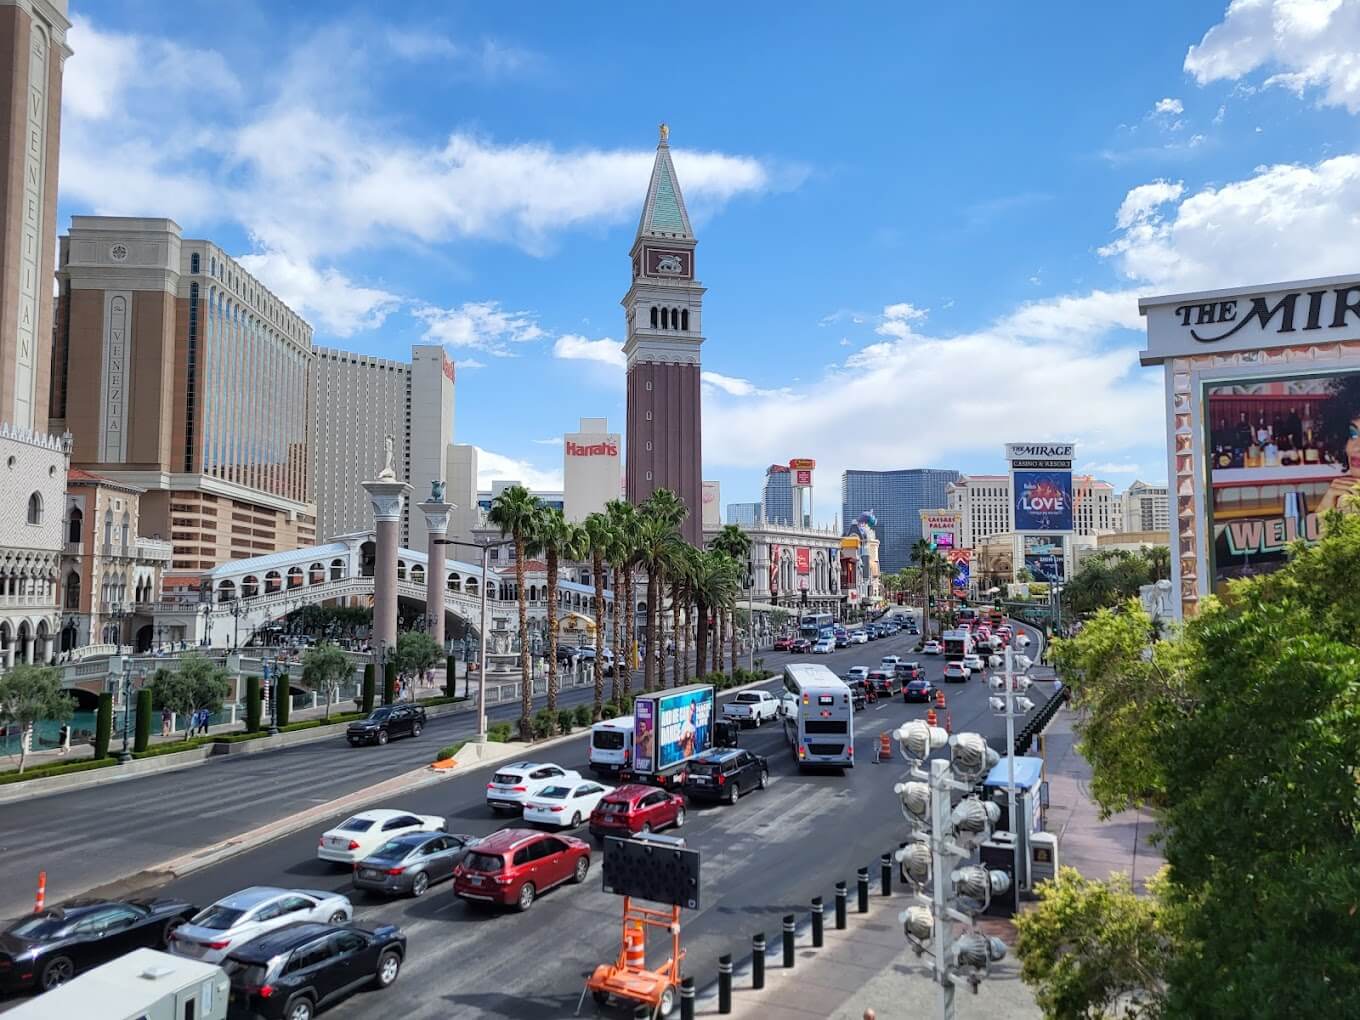 The Venetian Casino in Las Vegas offering free parking